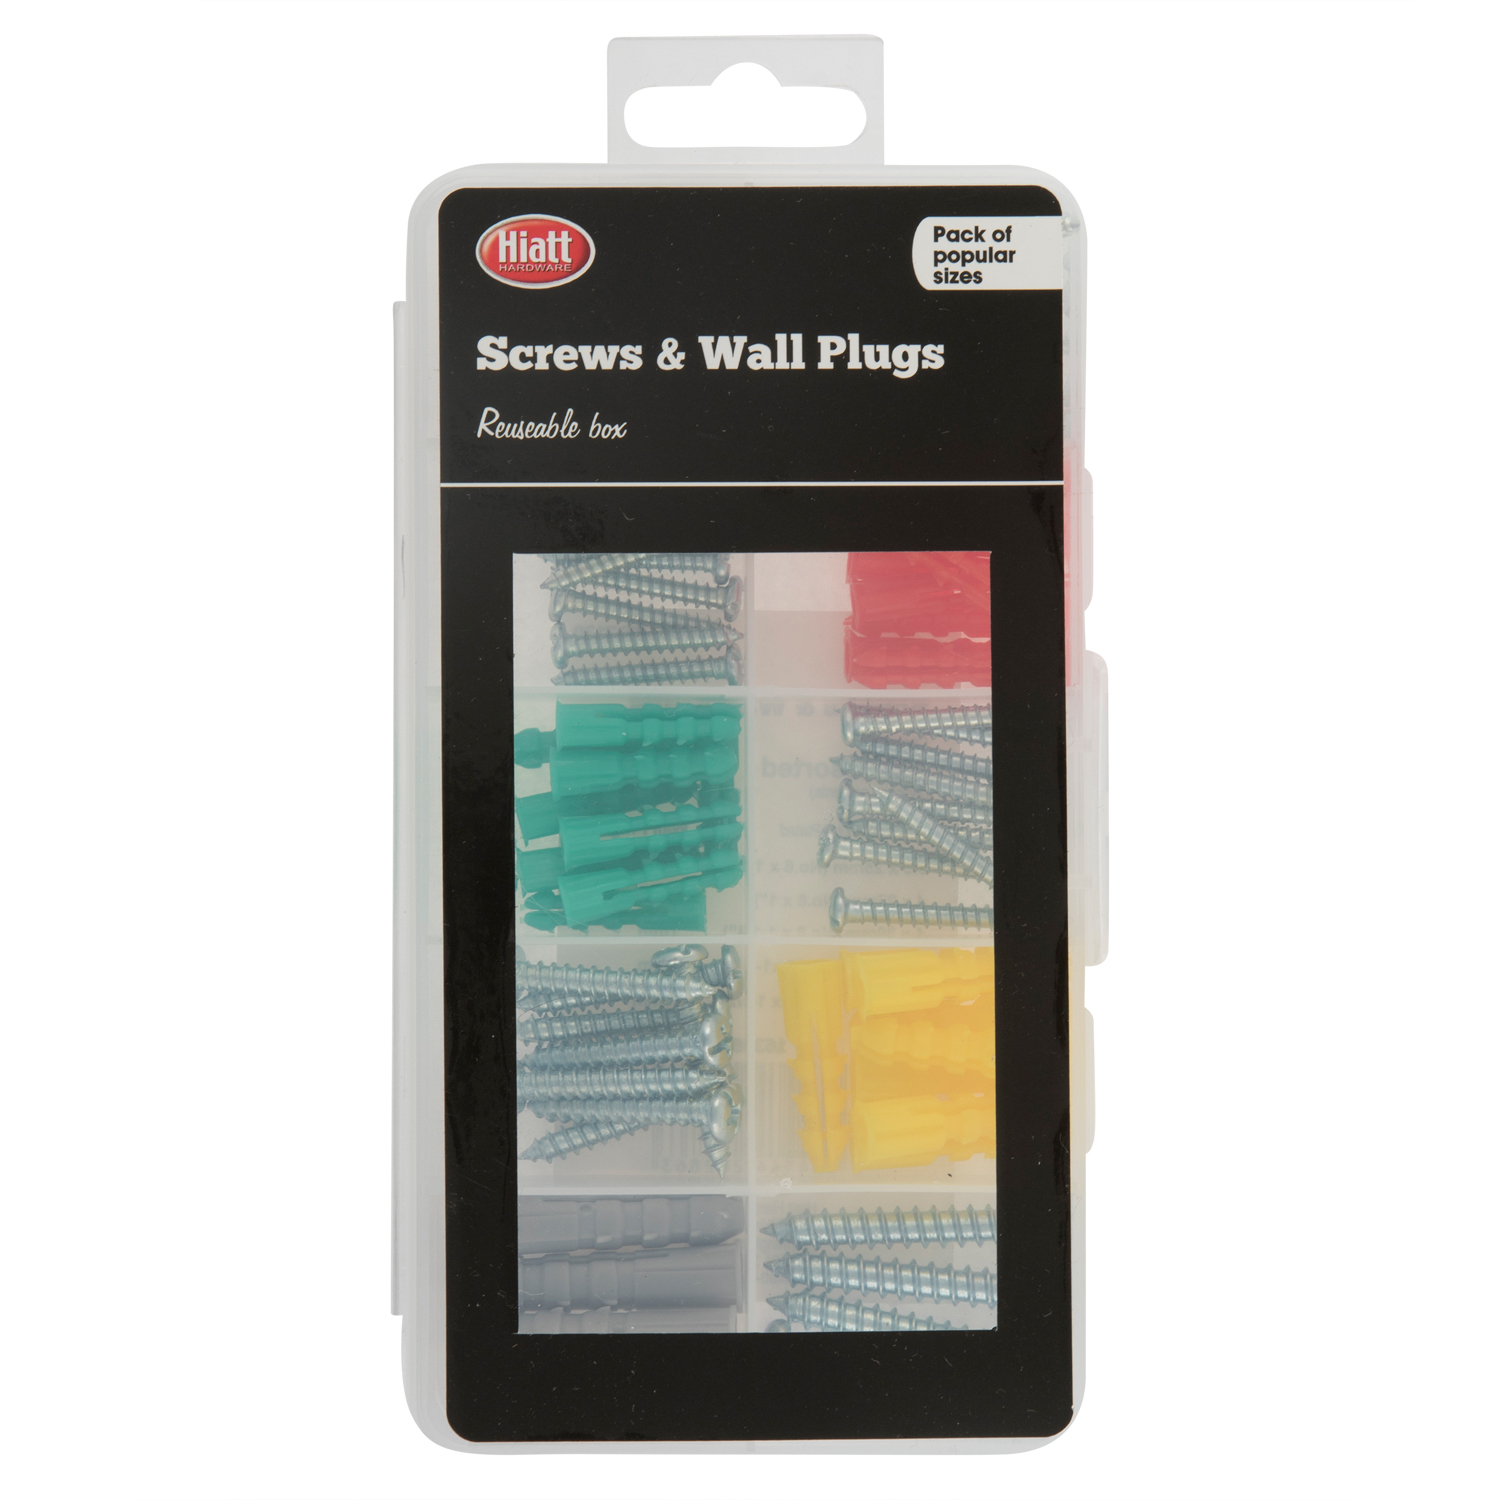 Hiatt Value Screws and Wall Plugs Kit Image